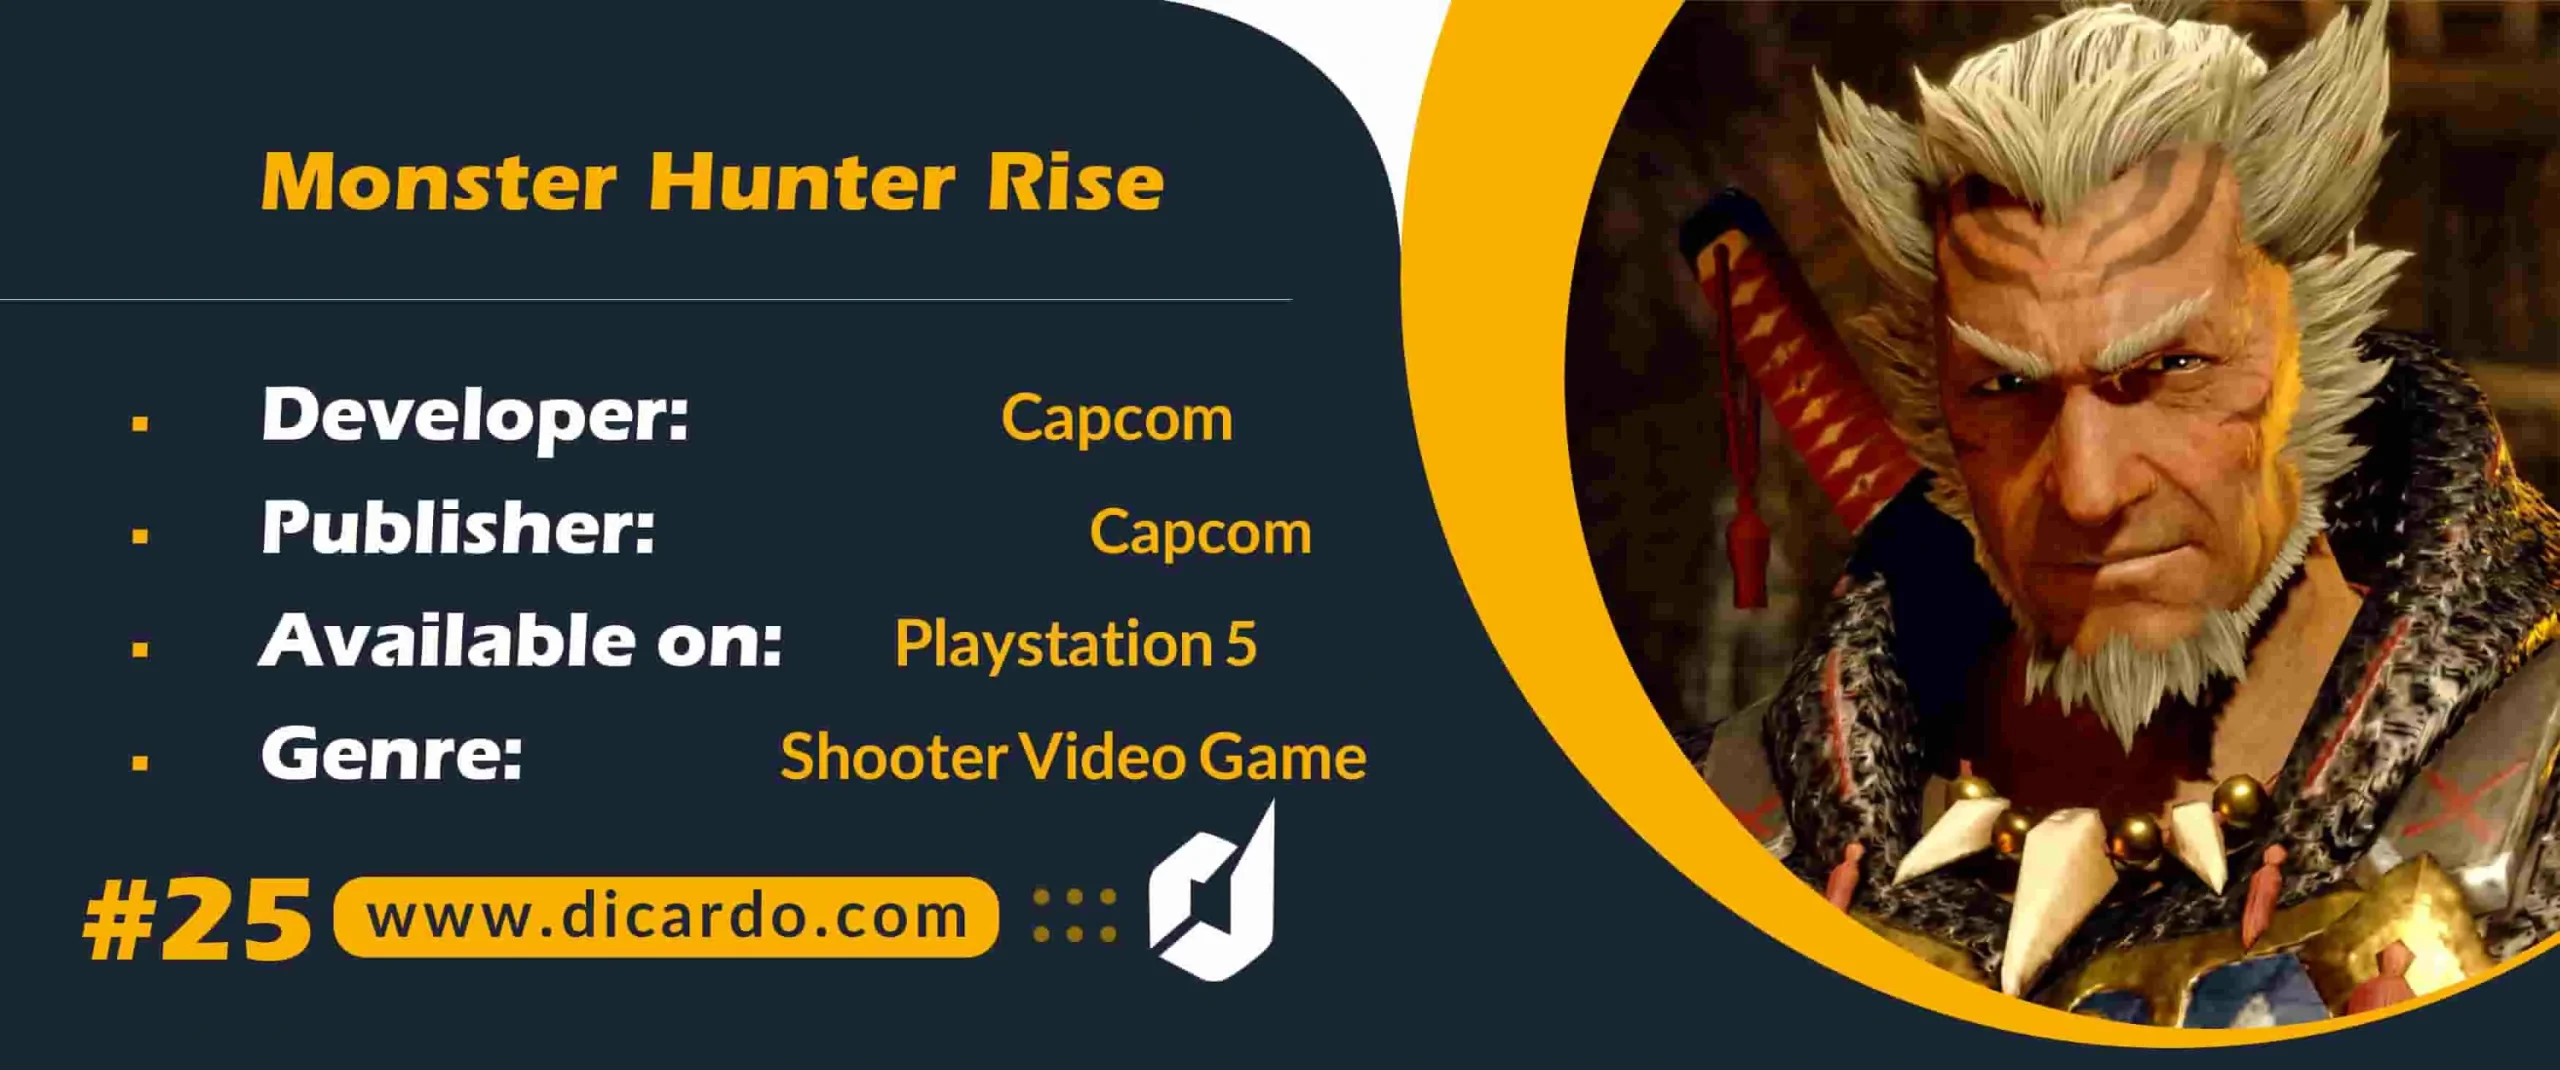 #25 مانستر هانتر رایس Monster Hunter Rise از بهترین بازیهای PS5 توسعه یافته توسط Capcom